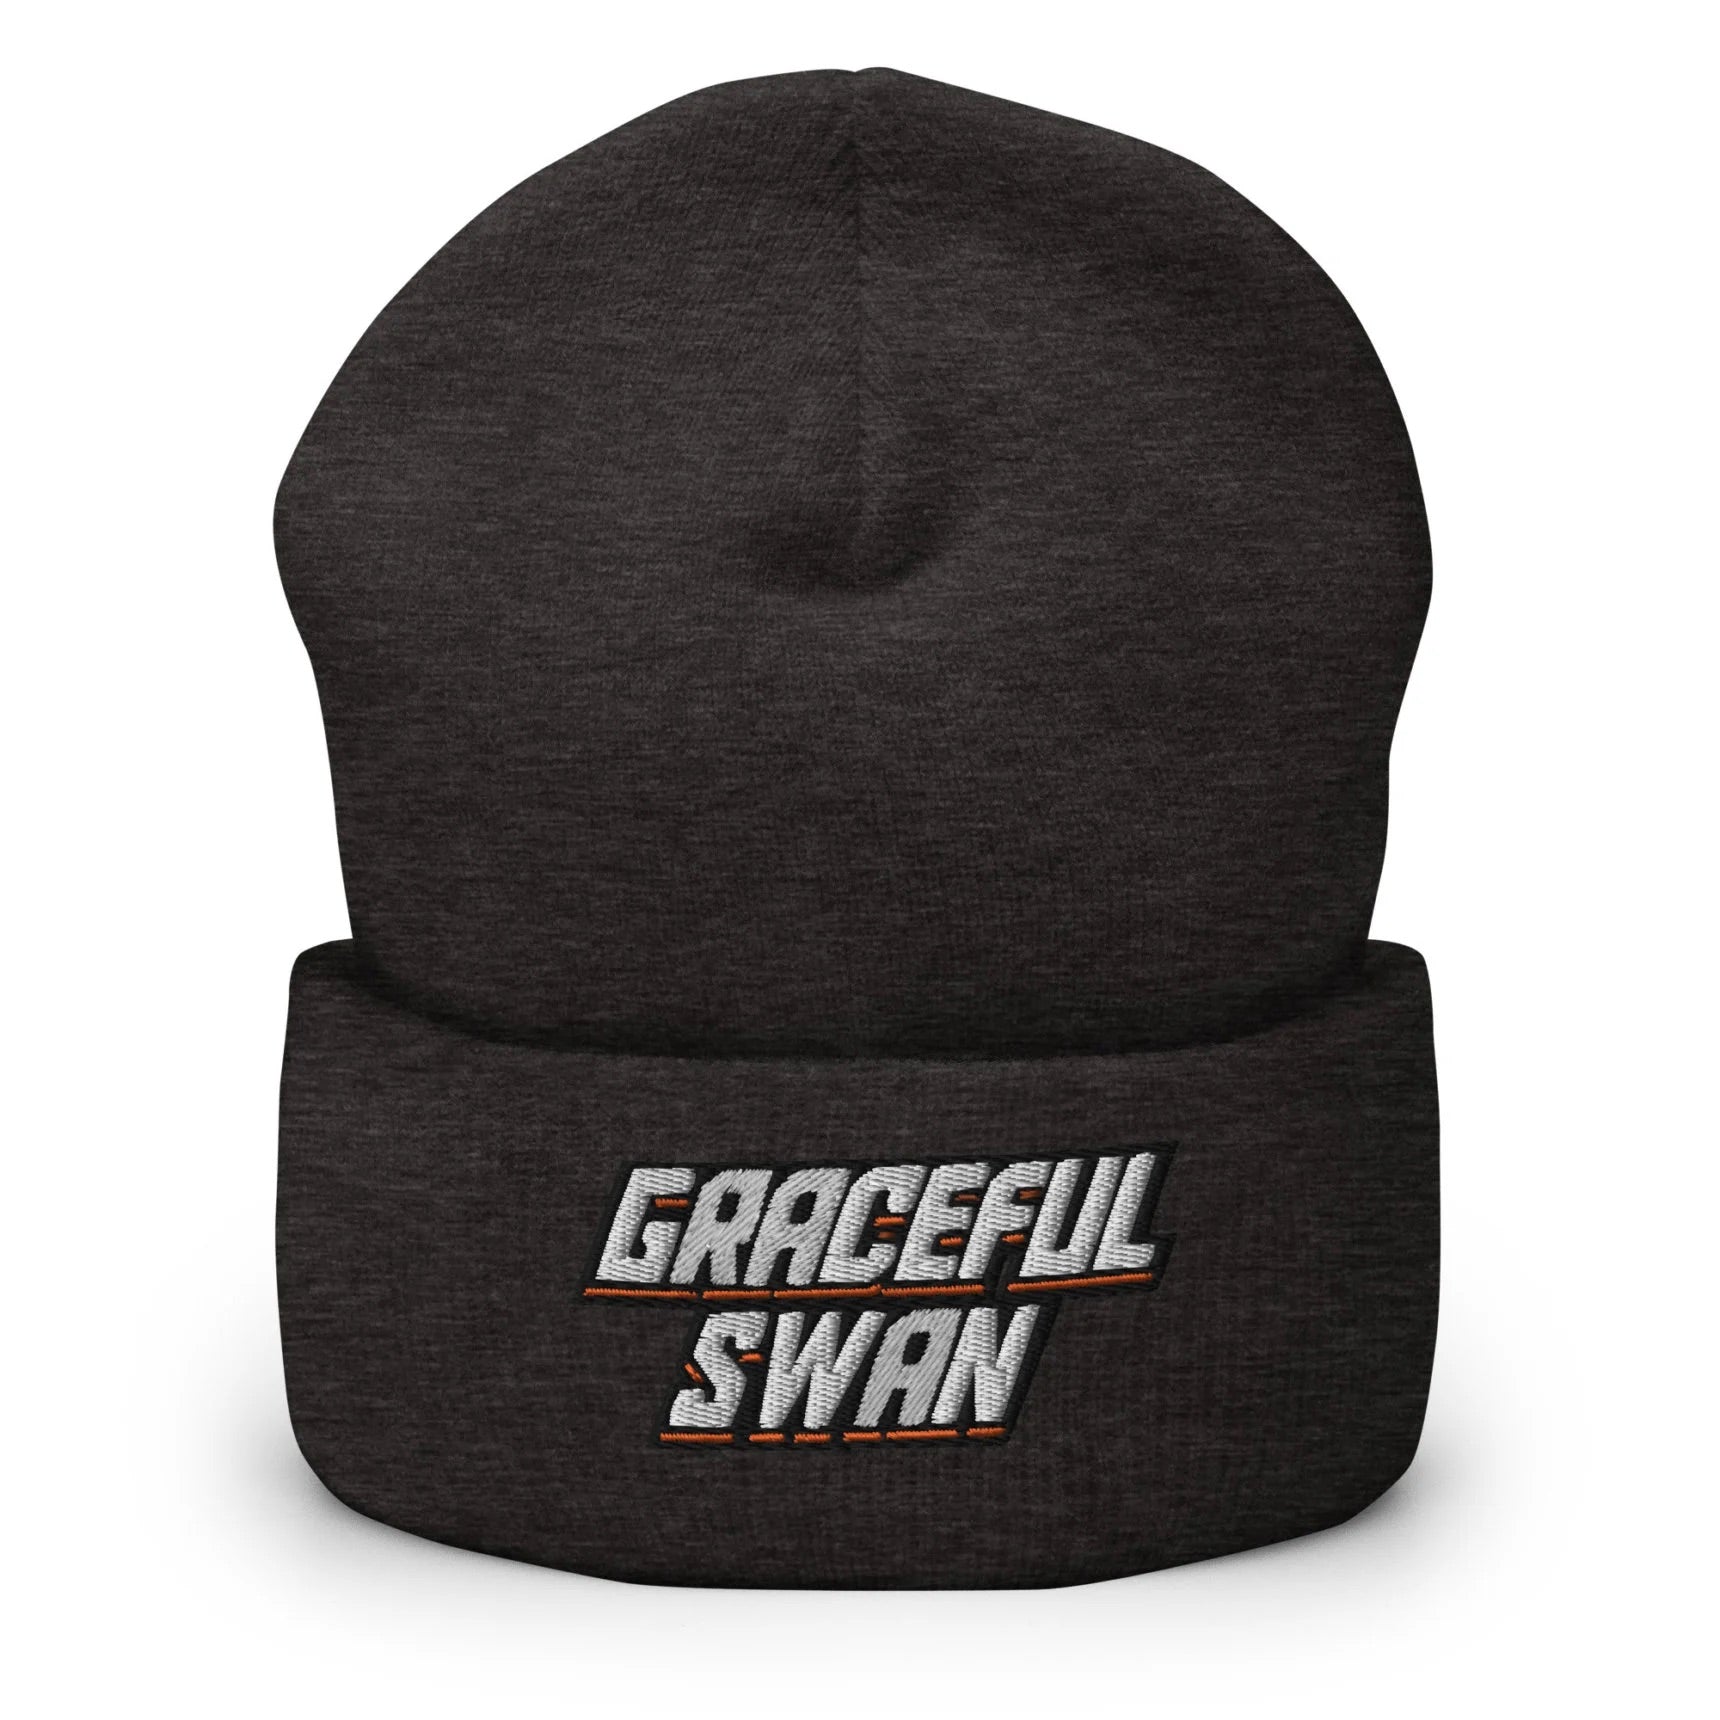 Graceful Swan Beanie by ShowZone in dark grey with text logo